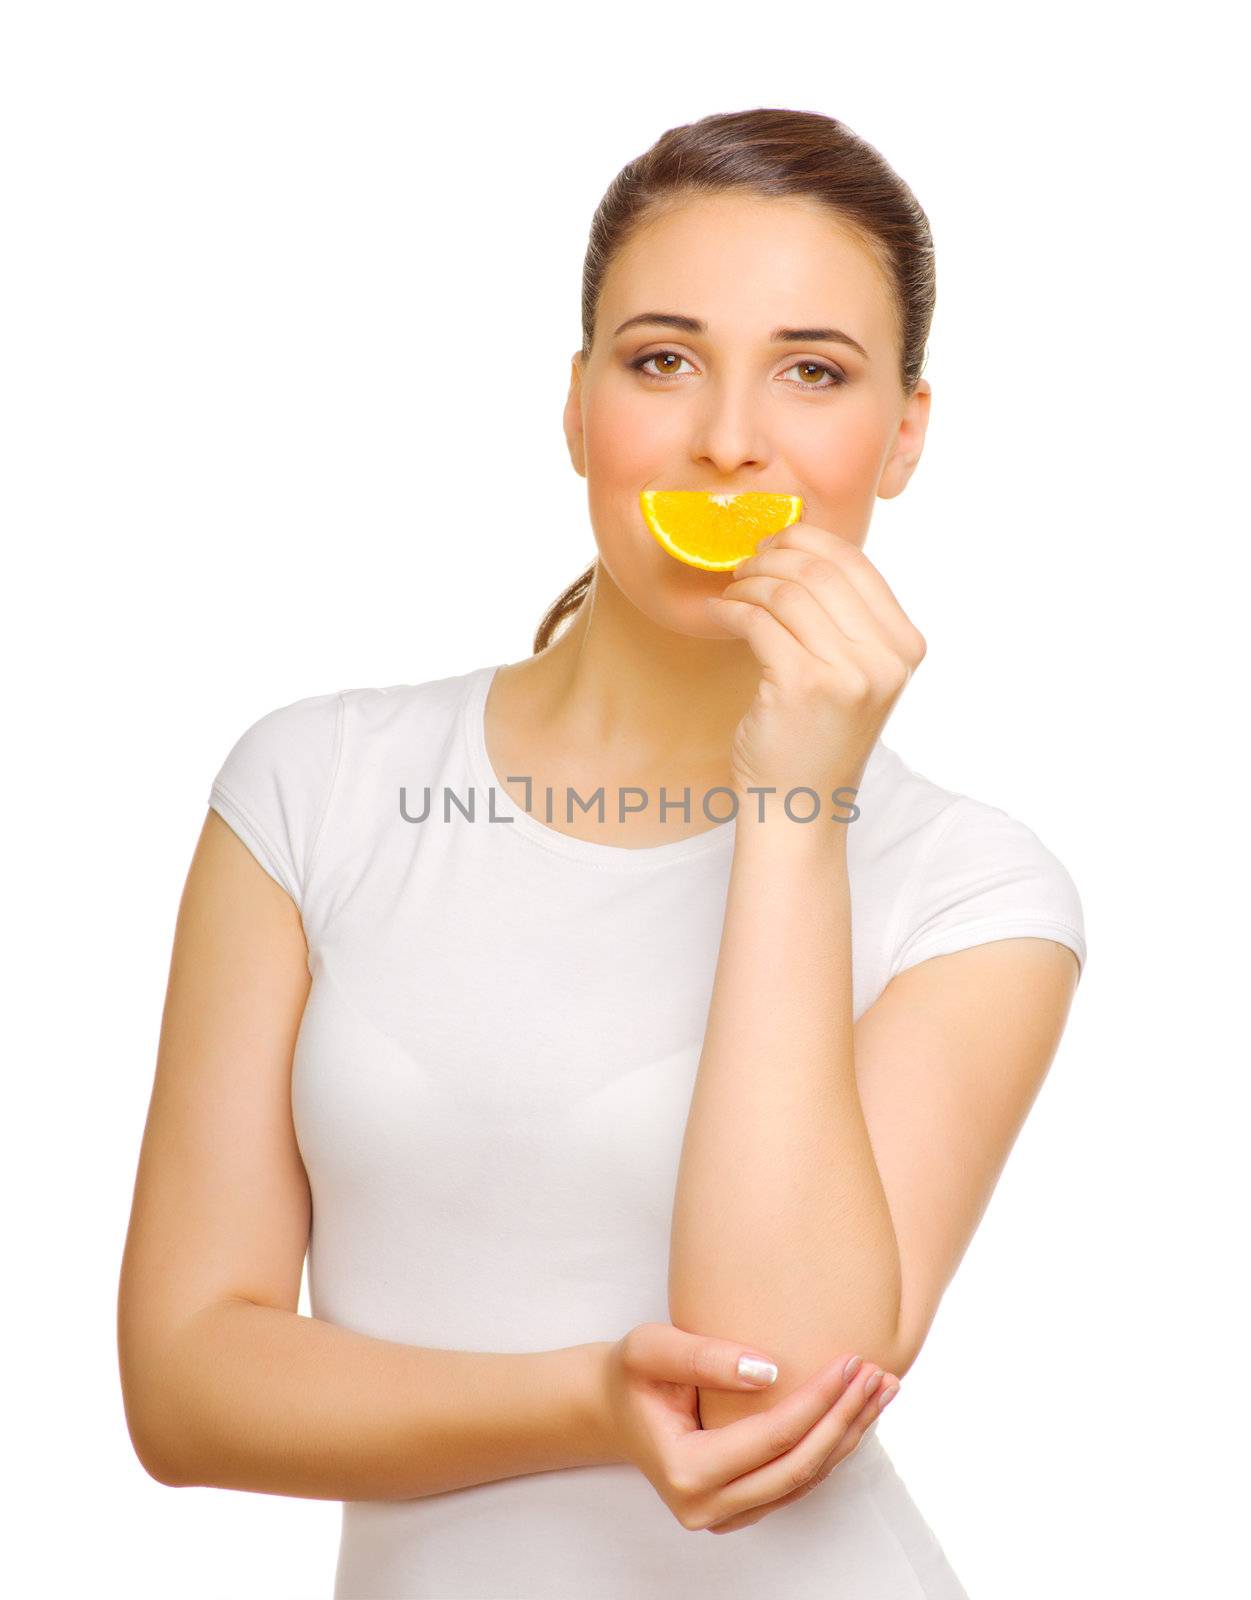 Young girl with orange slice isolated